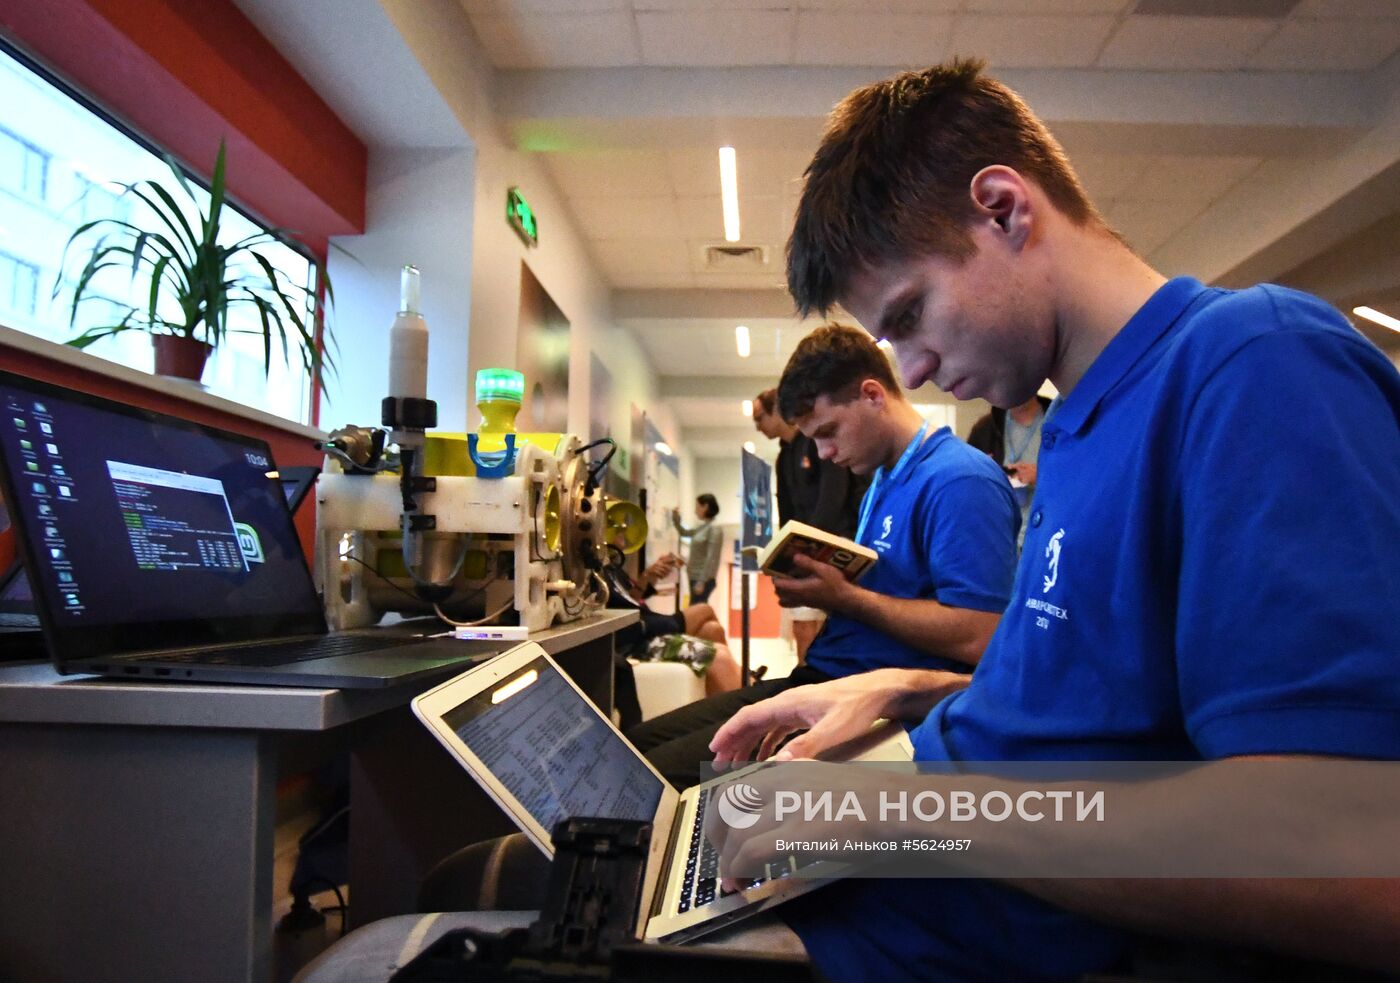 Всероссийские соревнования по морской робототехнике "Аквароботех" во Владивостоке